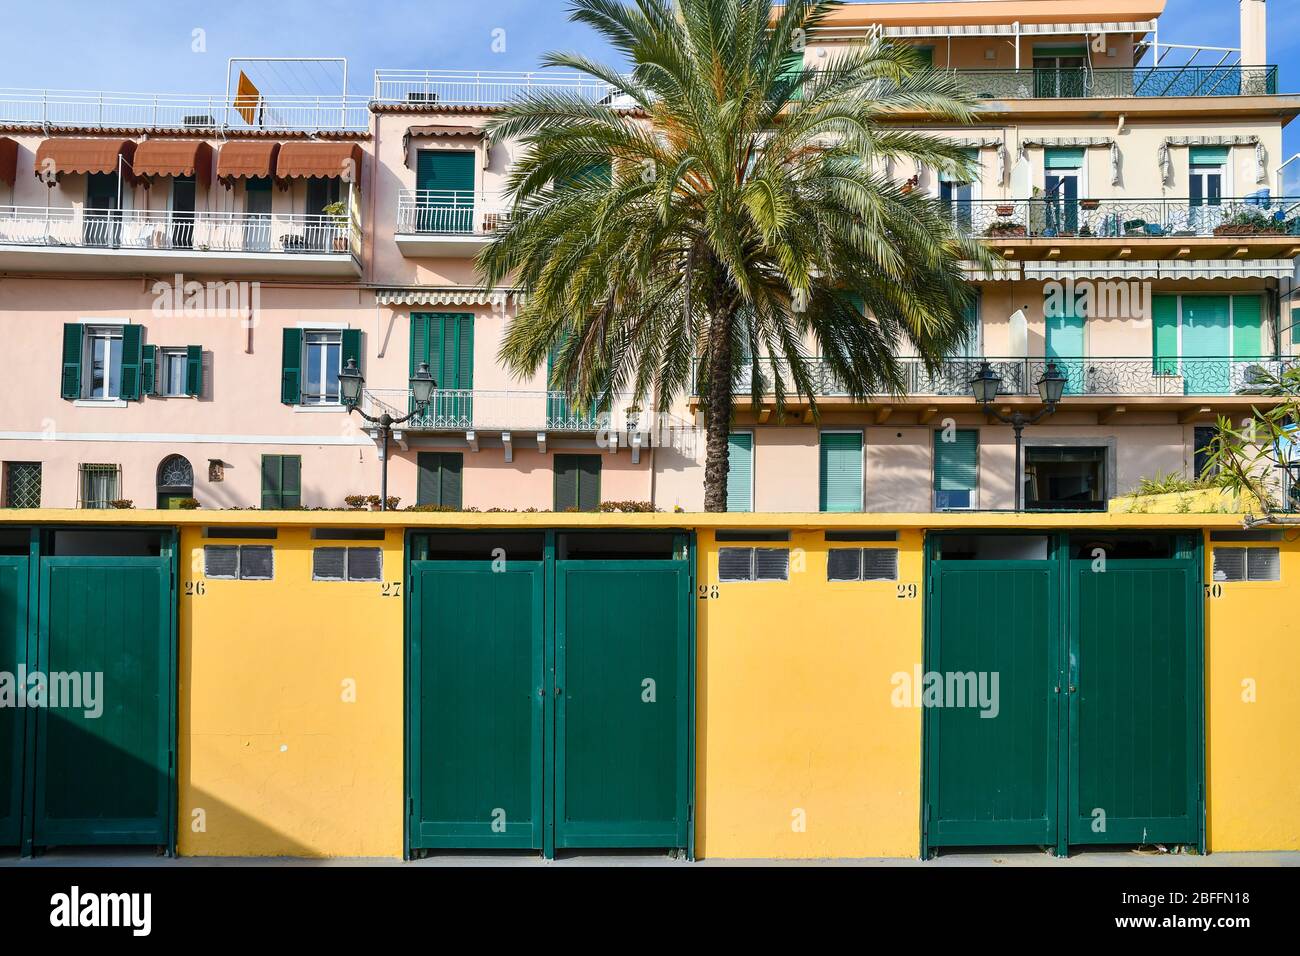 Blick auf die Uferpromenade von Sanremo mit einer Reihe von Strandhütten, einer Palme und einem Wohngebäude in hellen Farben, Imperia, Ligurien, Italien Stockfoto